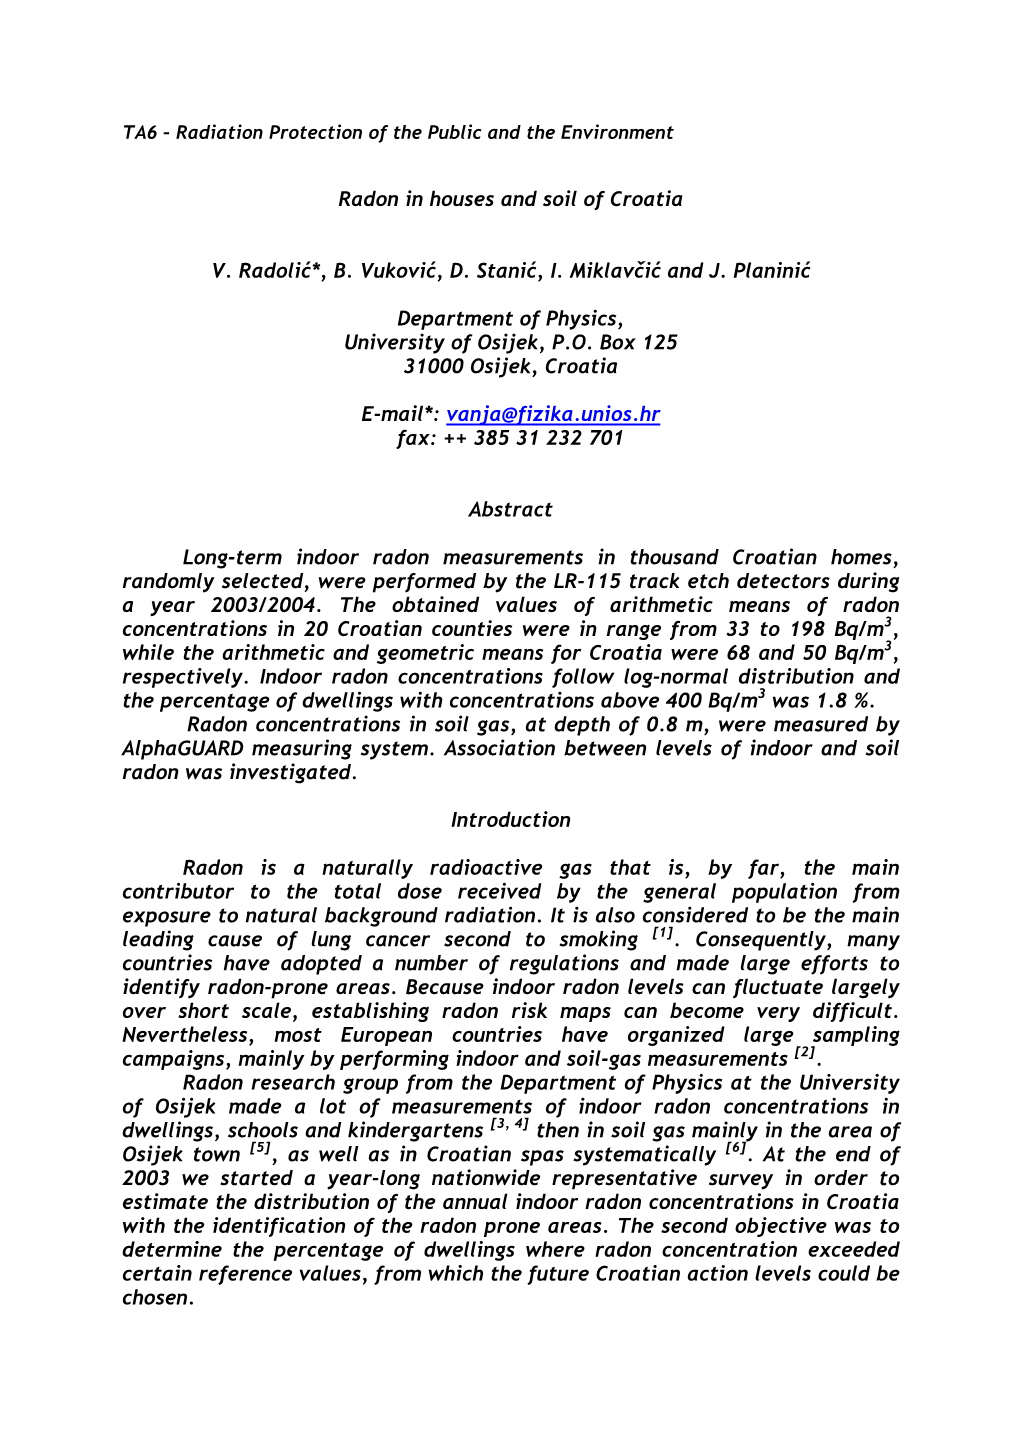 Radon in Houses and Soil of Croatia V. Radolić*, B. Vuković, D. Stanić, I